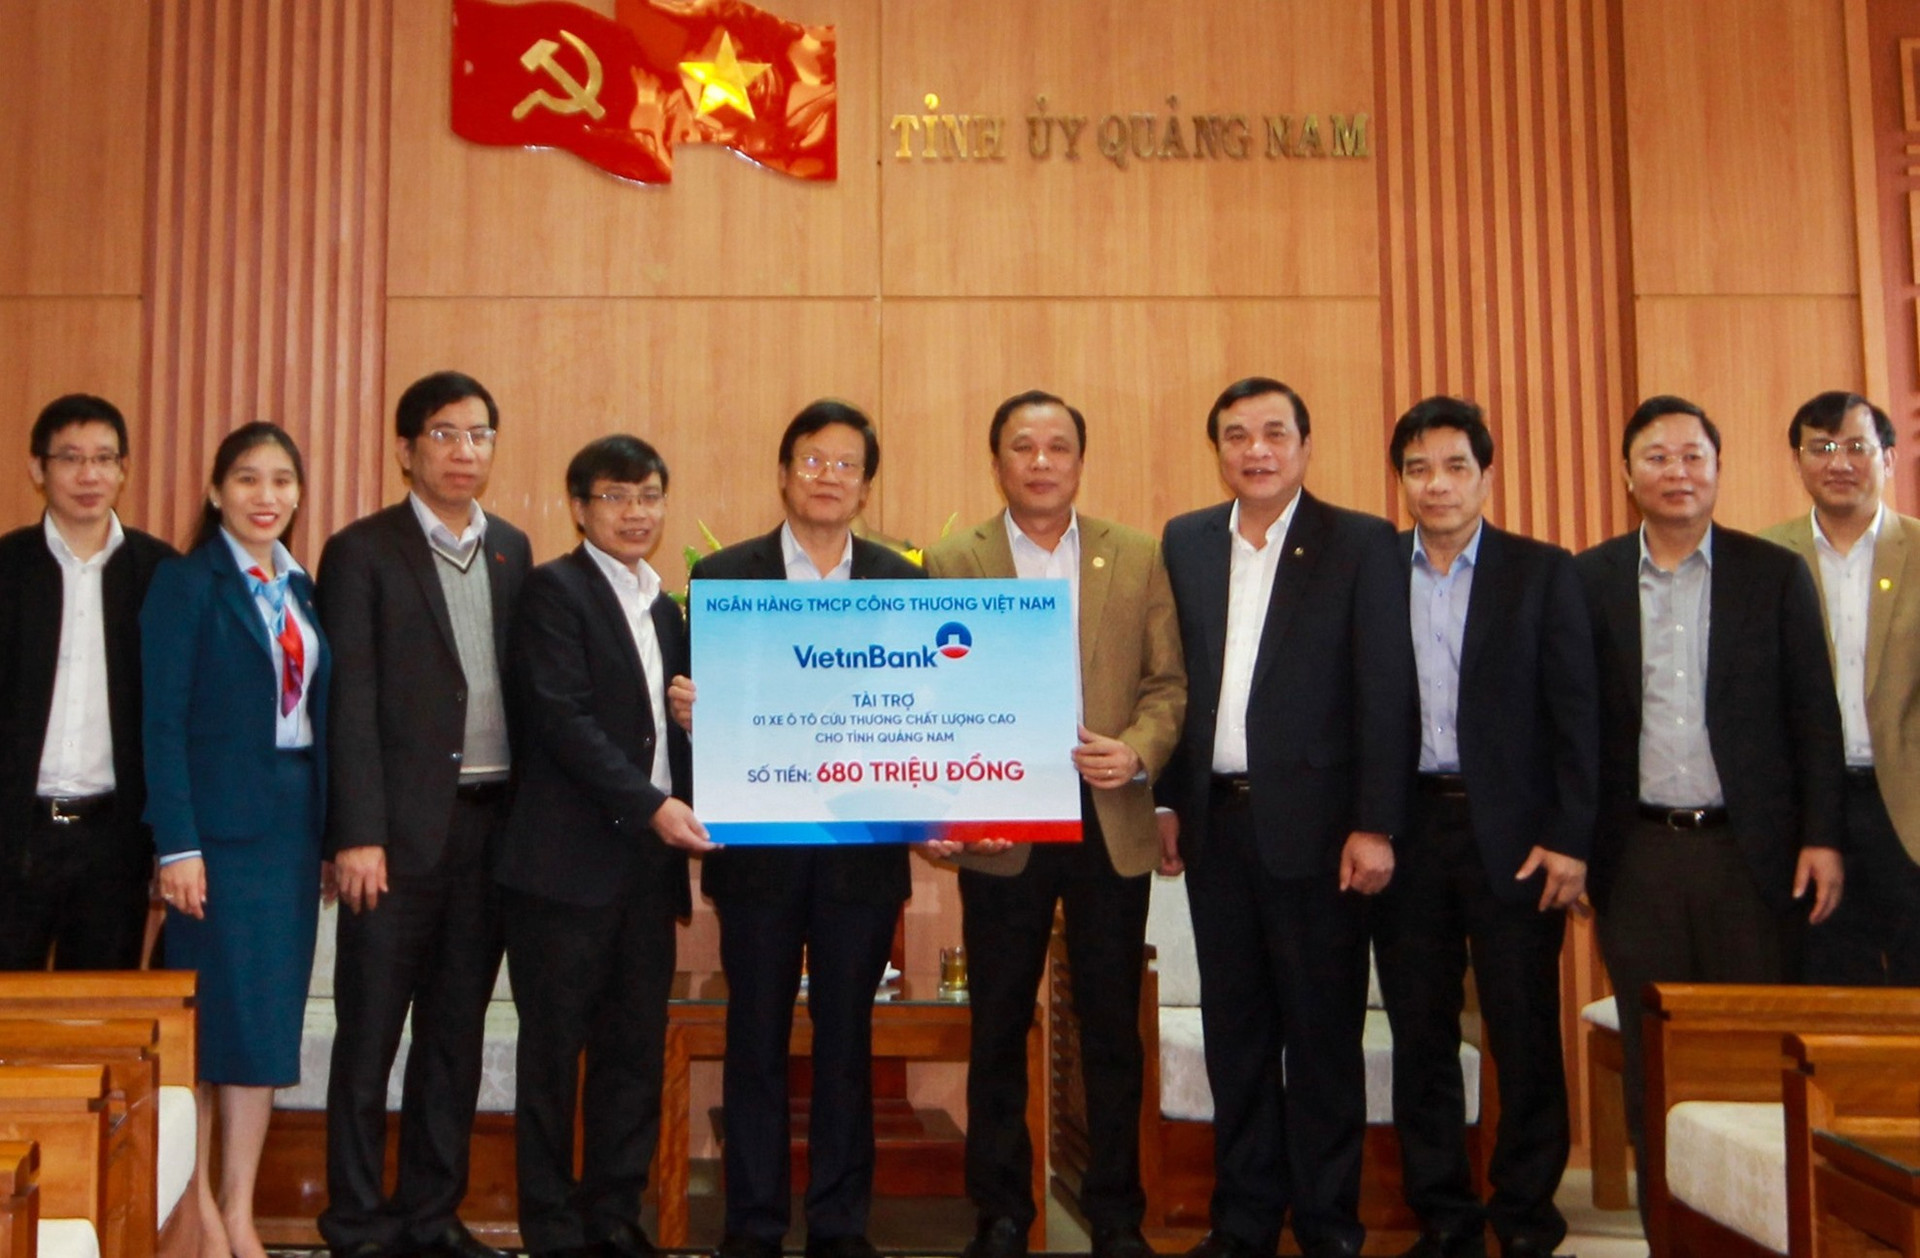 Ngân hàng Vietinbank cũng trao tặng một xe cứu thương chất lượng cao cho Quảng Nam. Ảnh: T.C